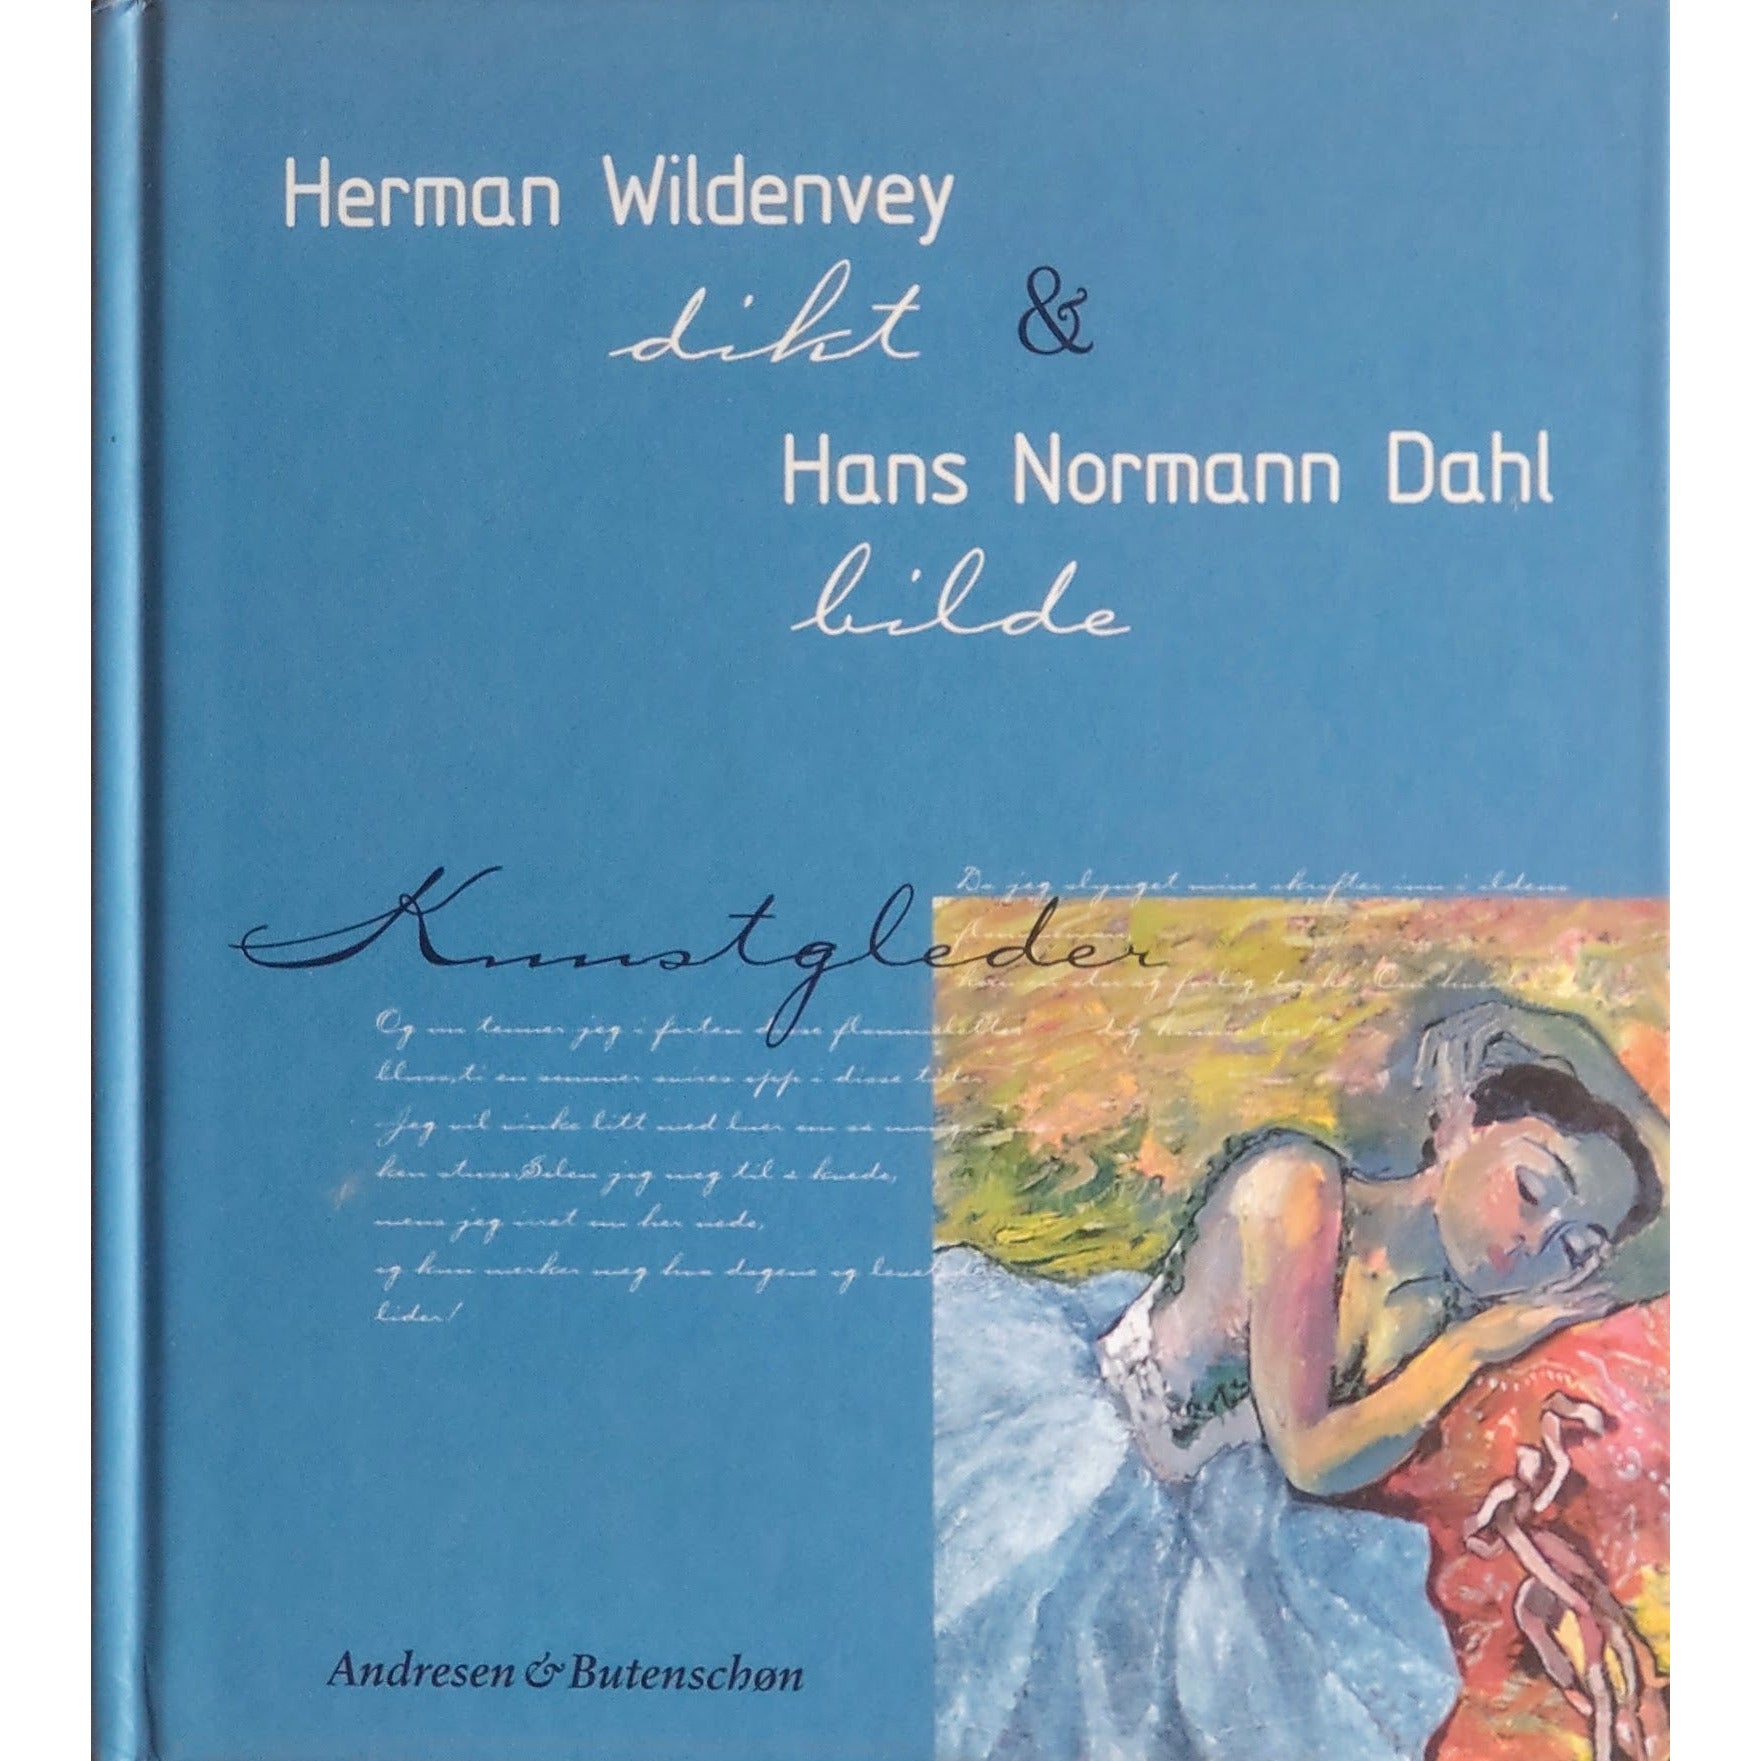 Herman Wildenvey dikt & Hans Normann Dahl bilde: Kunstgleder. Brukte bøker